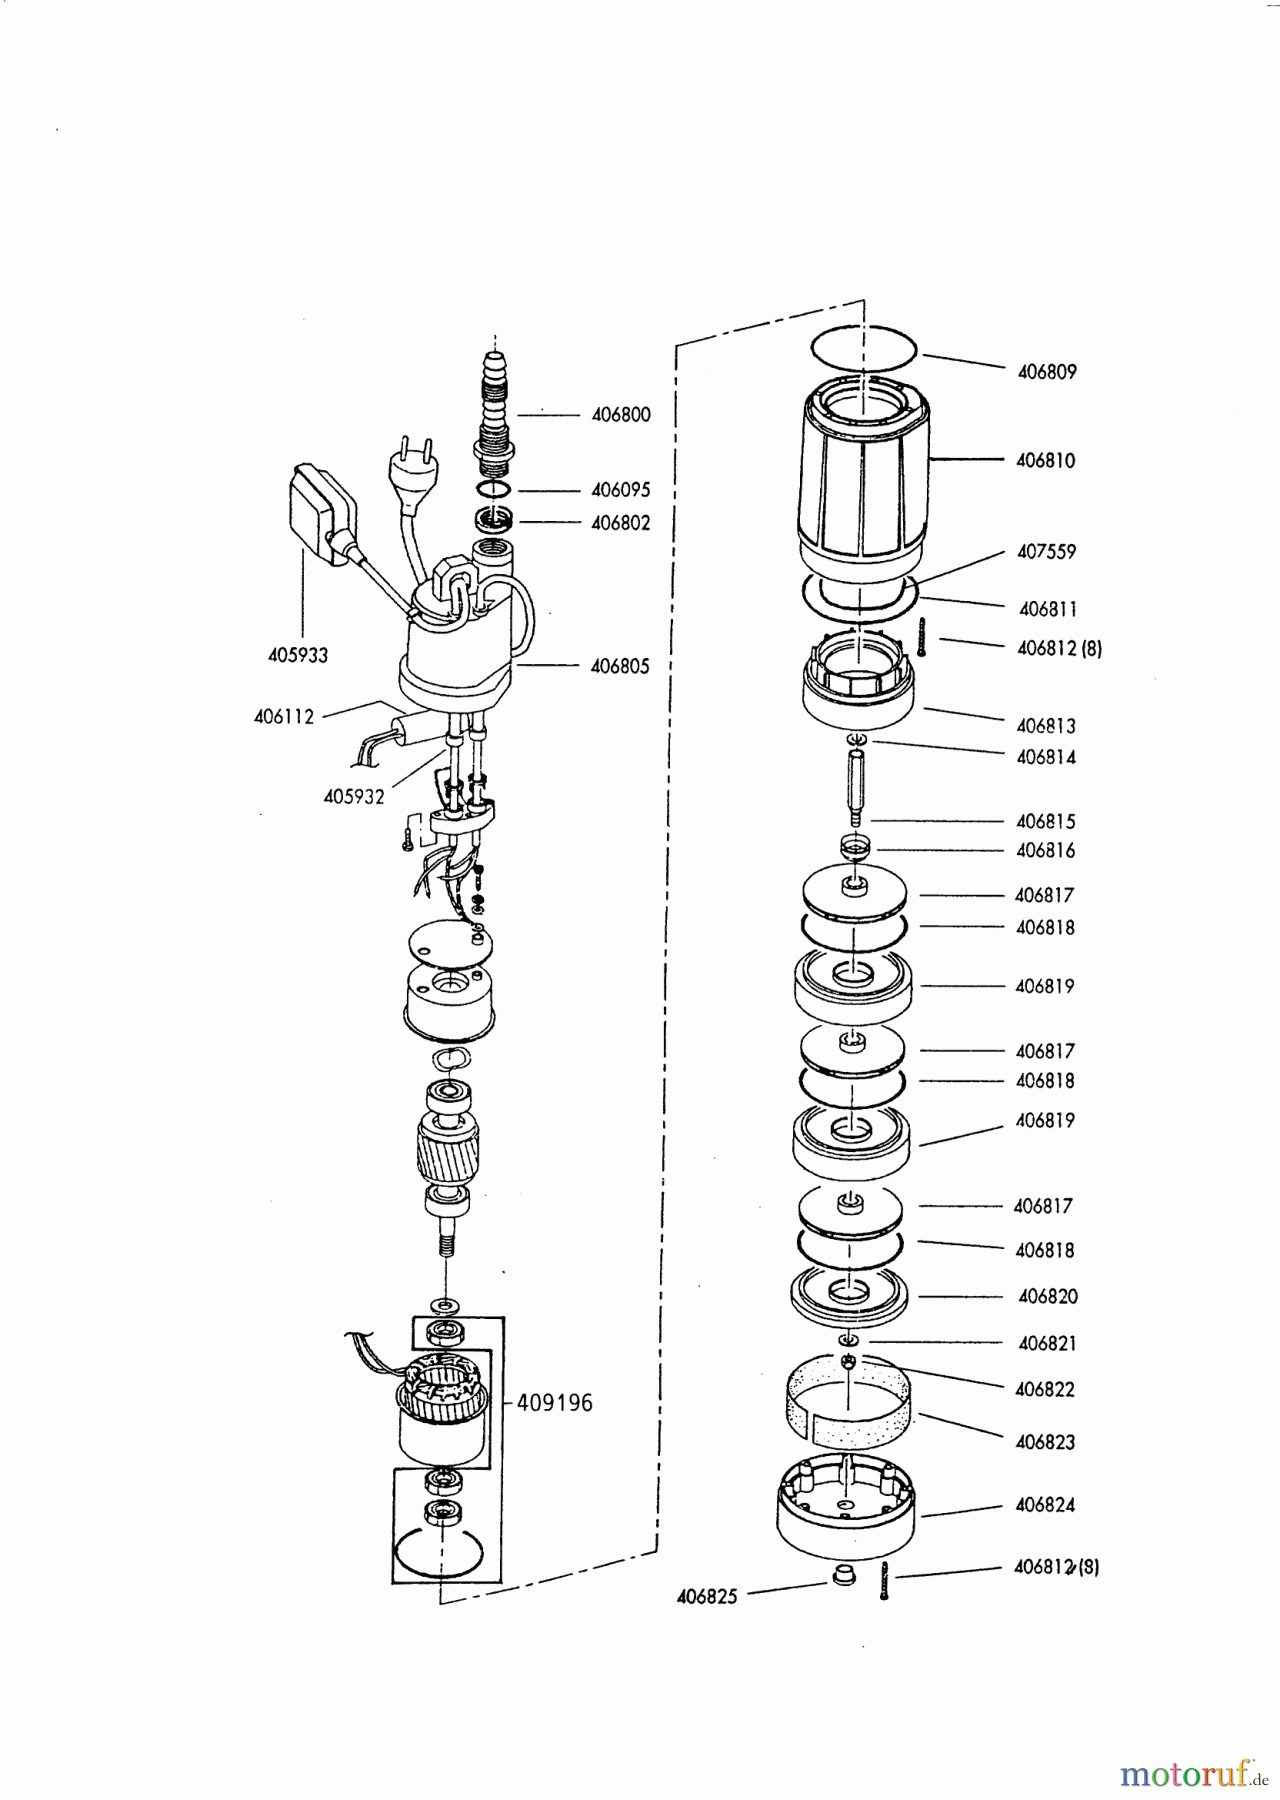  AL-KO Wassertechnik Tauchdruckpumpen TDS 1000 11/1993 - 12/1996 Seite 2